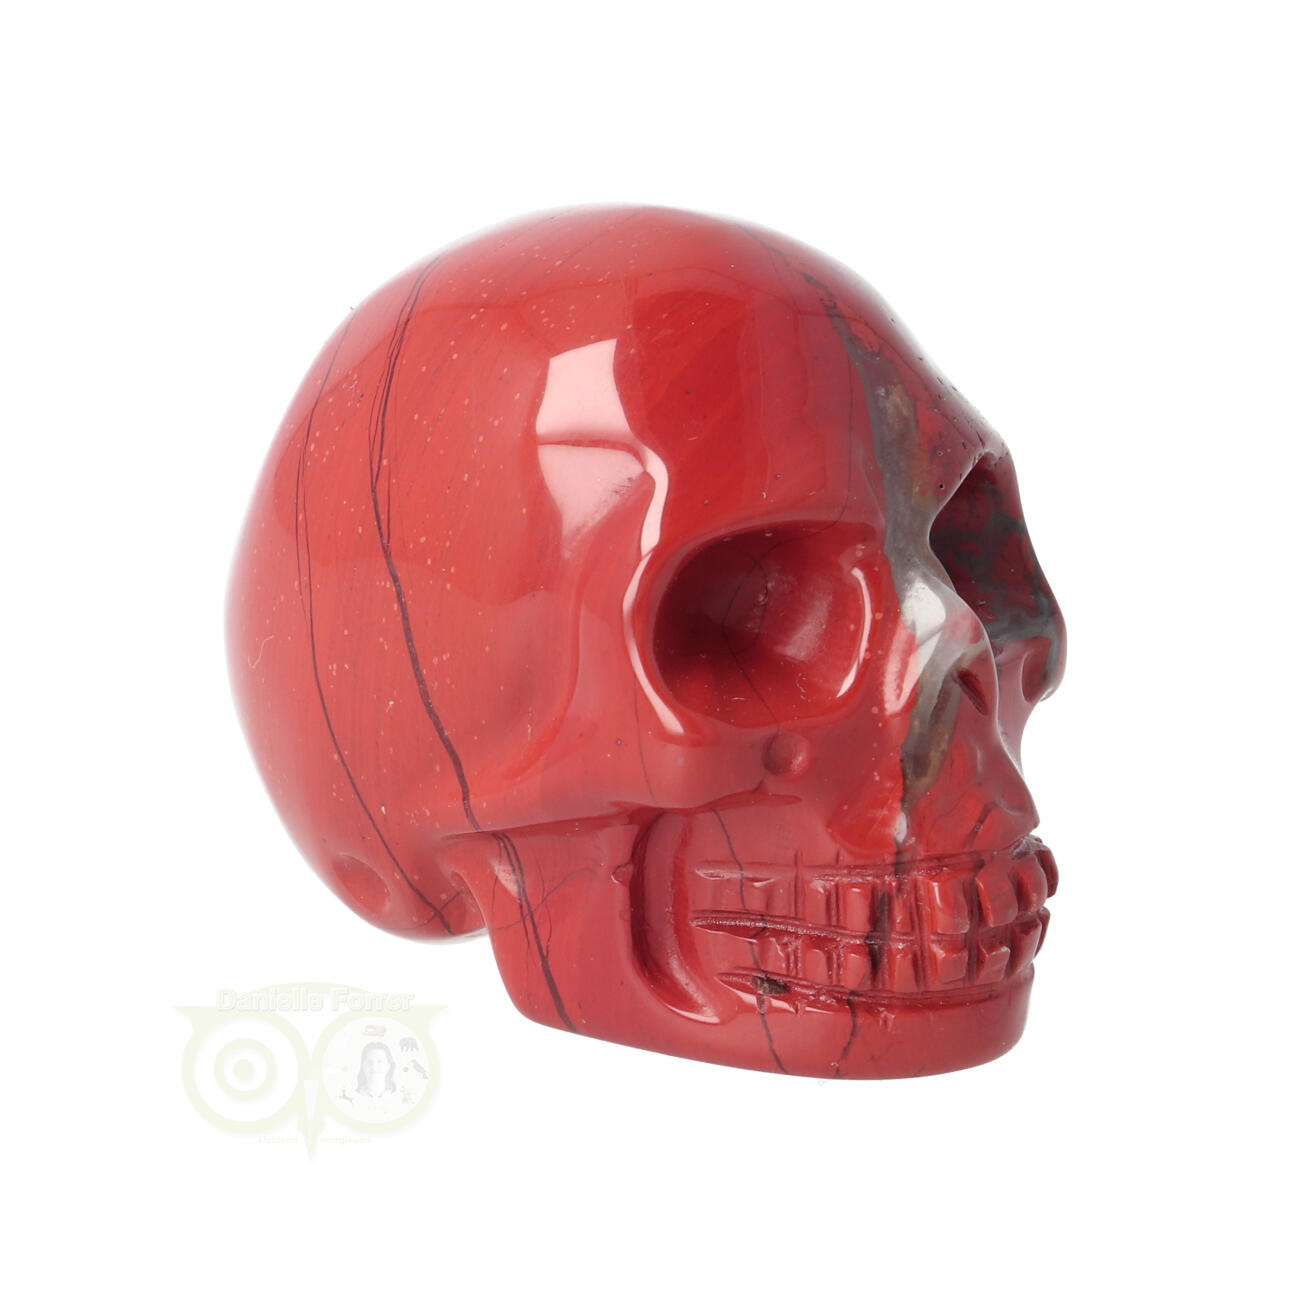 Rode Jaspis schedel Nr 9 | Kleine Edelstenen schedel Rode Jaspis kopen -  Edelstenen Webwinkel - Webshop Danielle Forrer